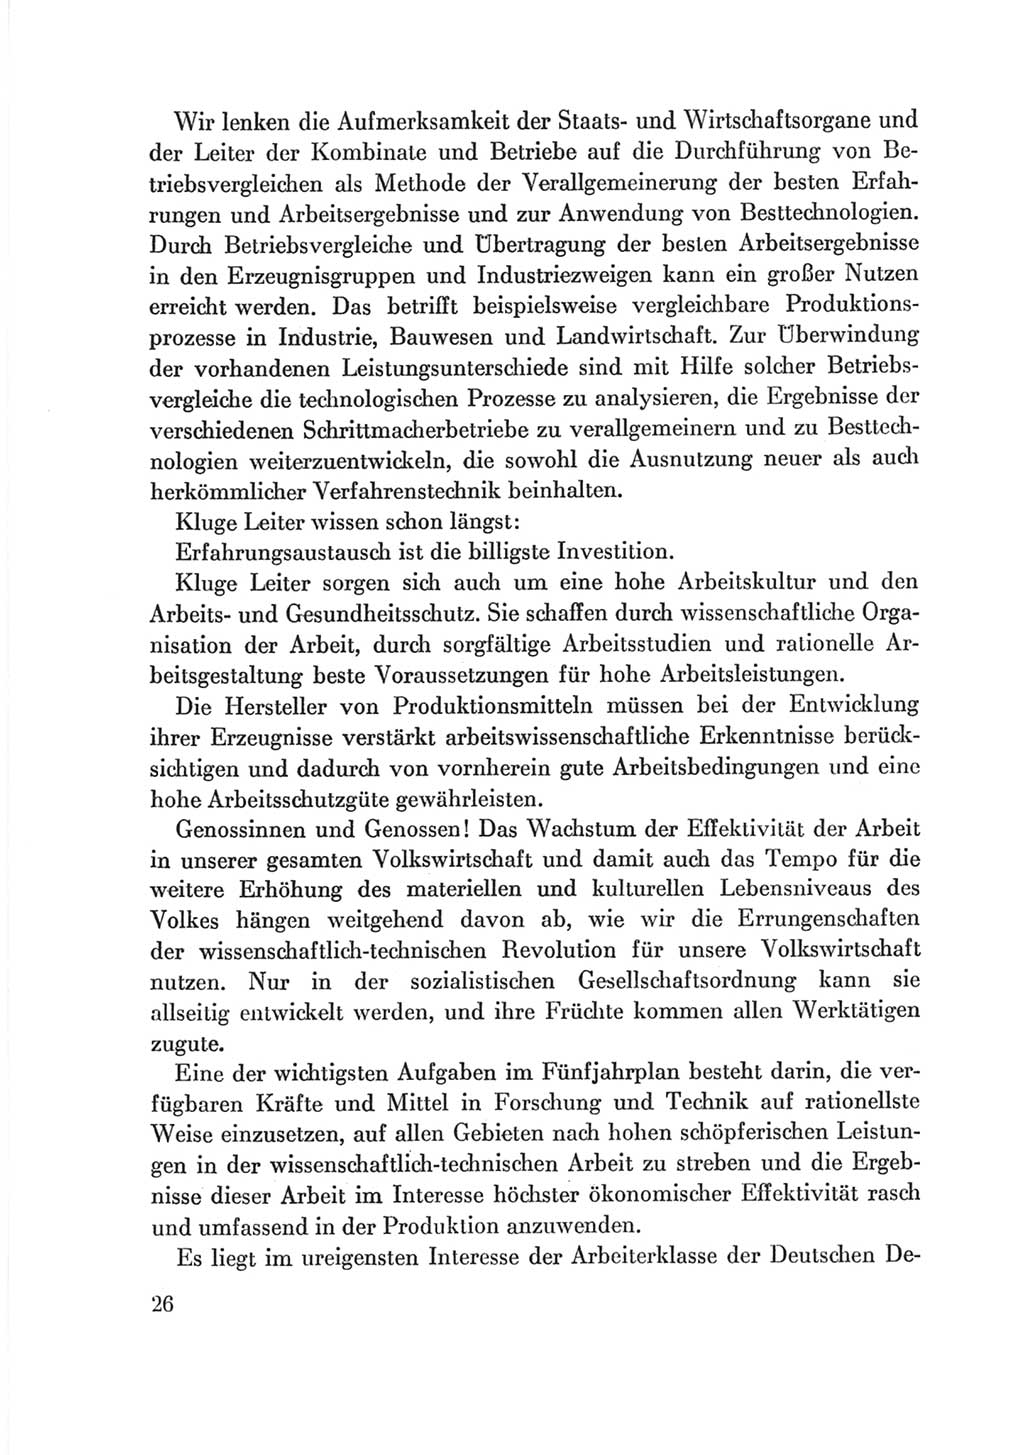 Protokoll der Verhandlungen des Ⅷ. Parteitages der Sozialistischen Einheitspartei Deutschlands (SED) [Deutsche Demokratische Republik (DDR)] 1971, Band 2, Seite 26 (Prot. Verh. Ⅷ. PT SED DDR 1971, Bd. 2, S. 26)